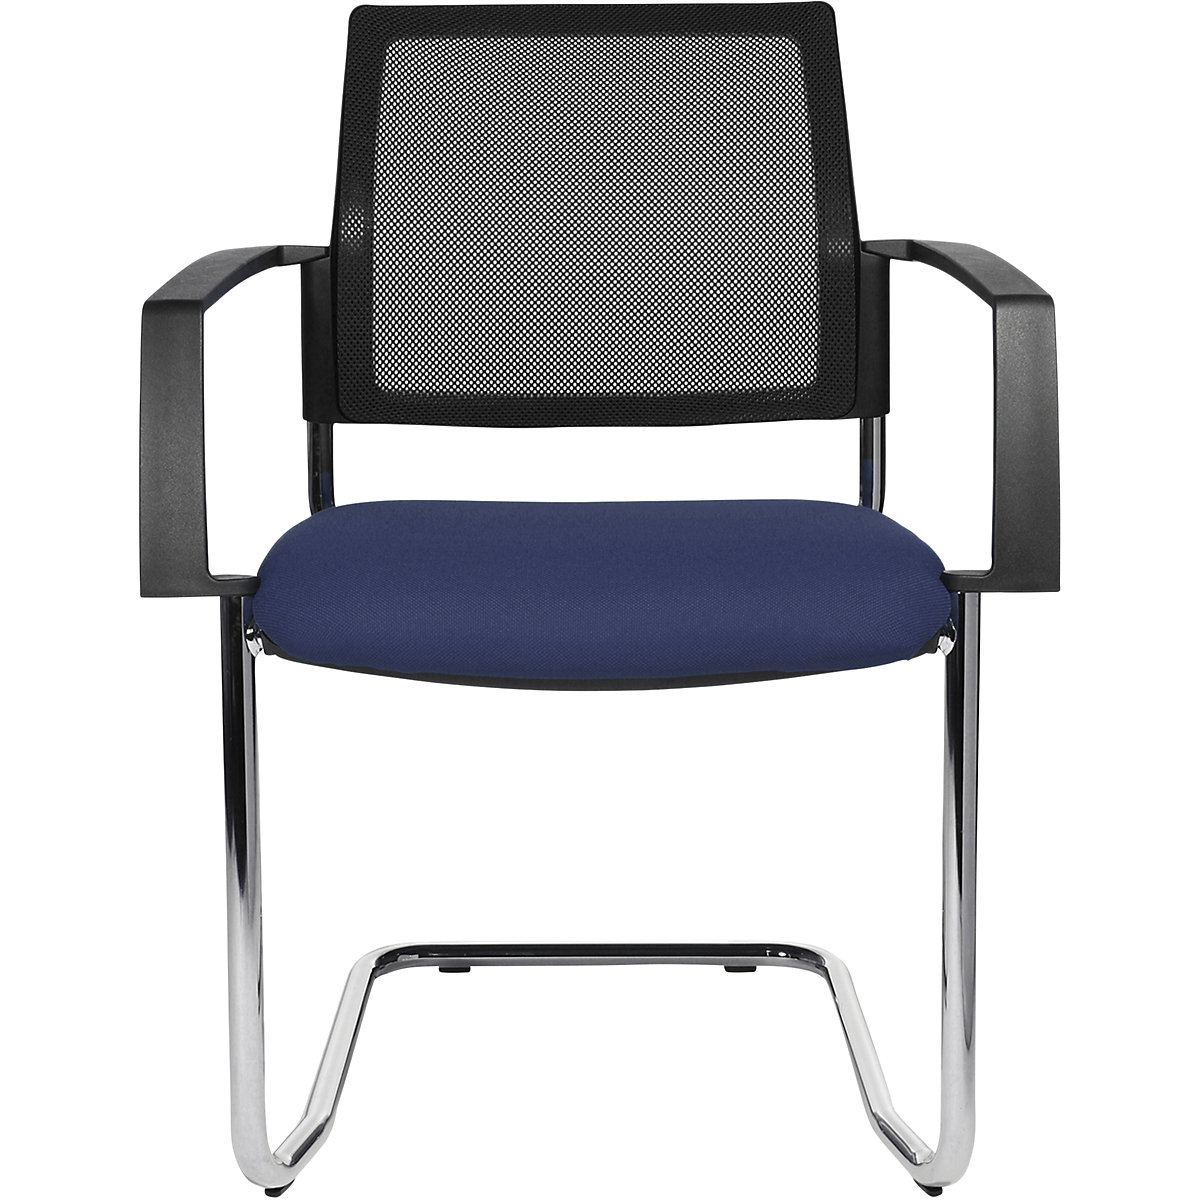 Složiva stolica s mrežastim naslonom – Topstar, konzolna stolica, pak. 2 kom., sjedalo u plavoj boji, kromirano postolje